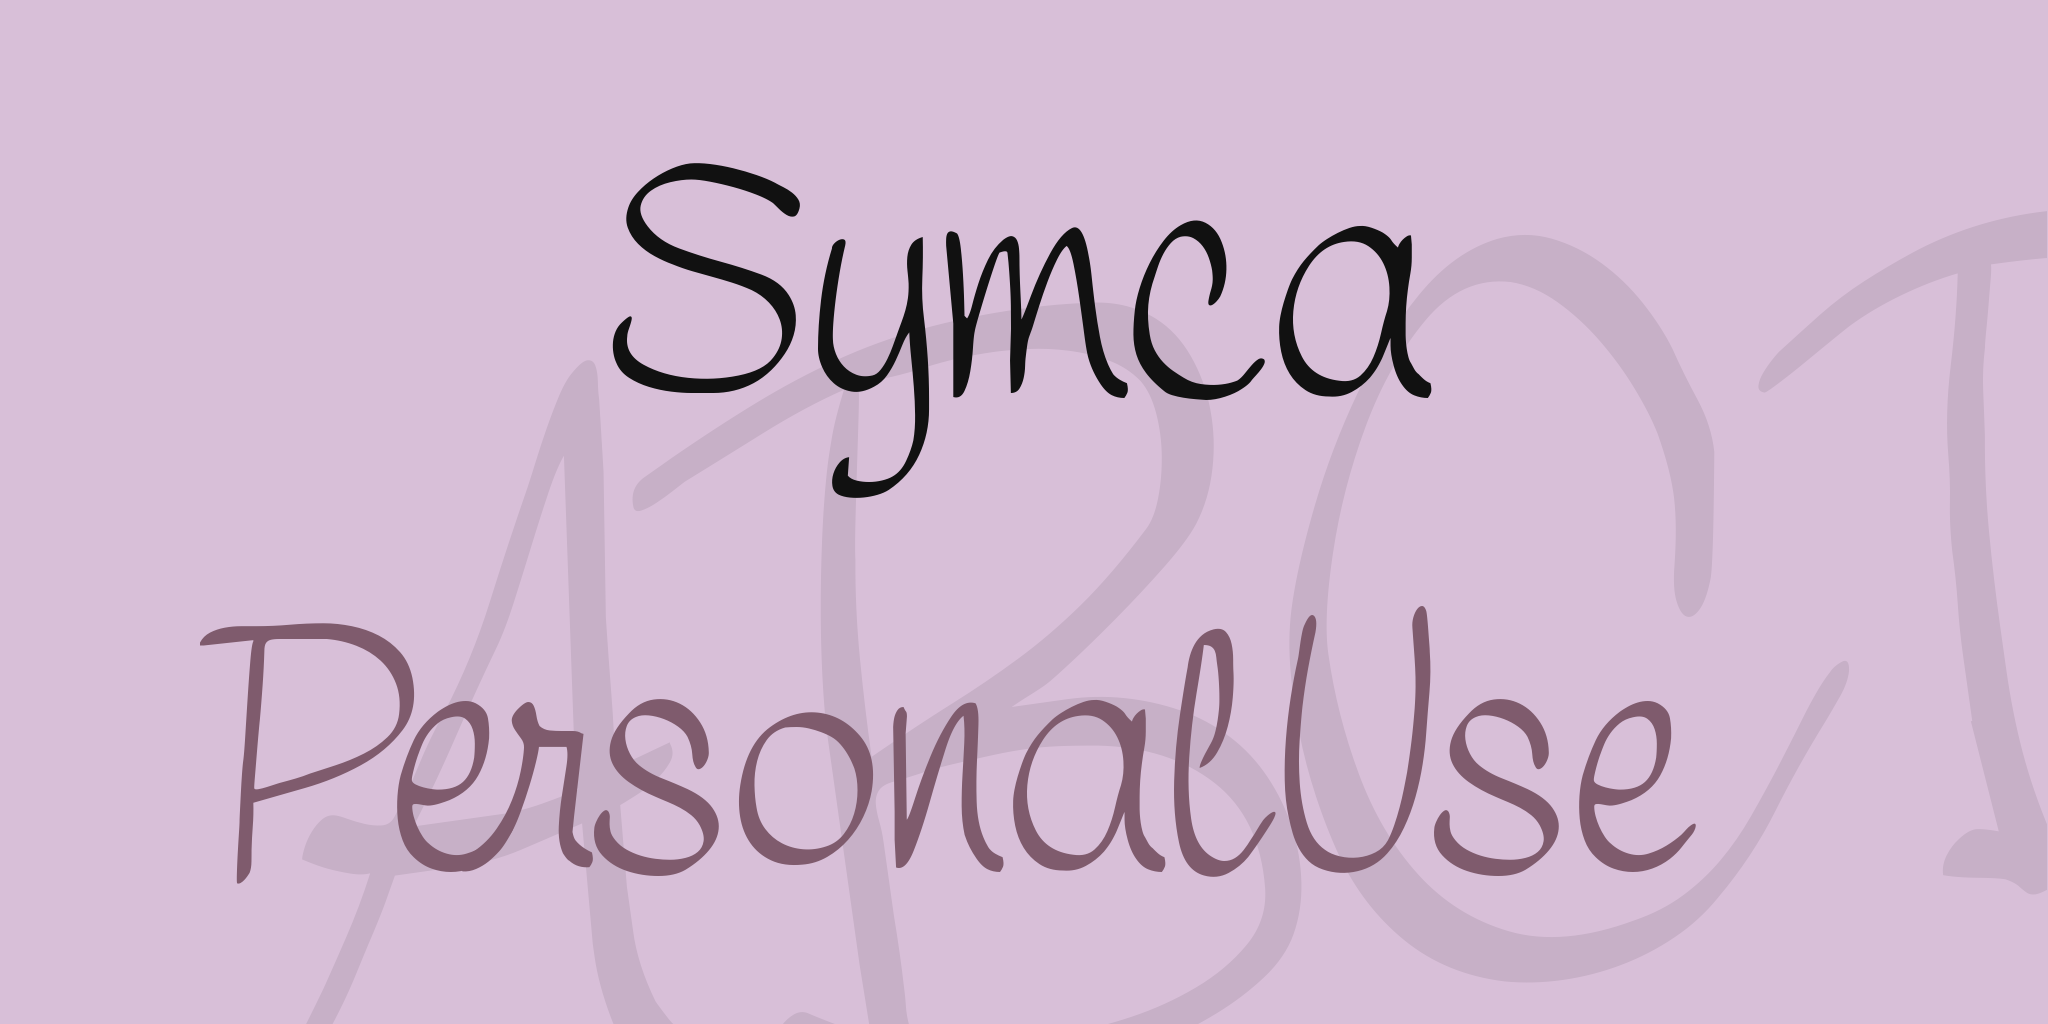 Symca